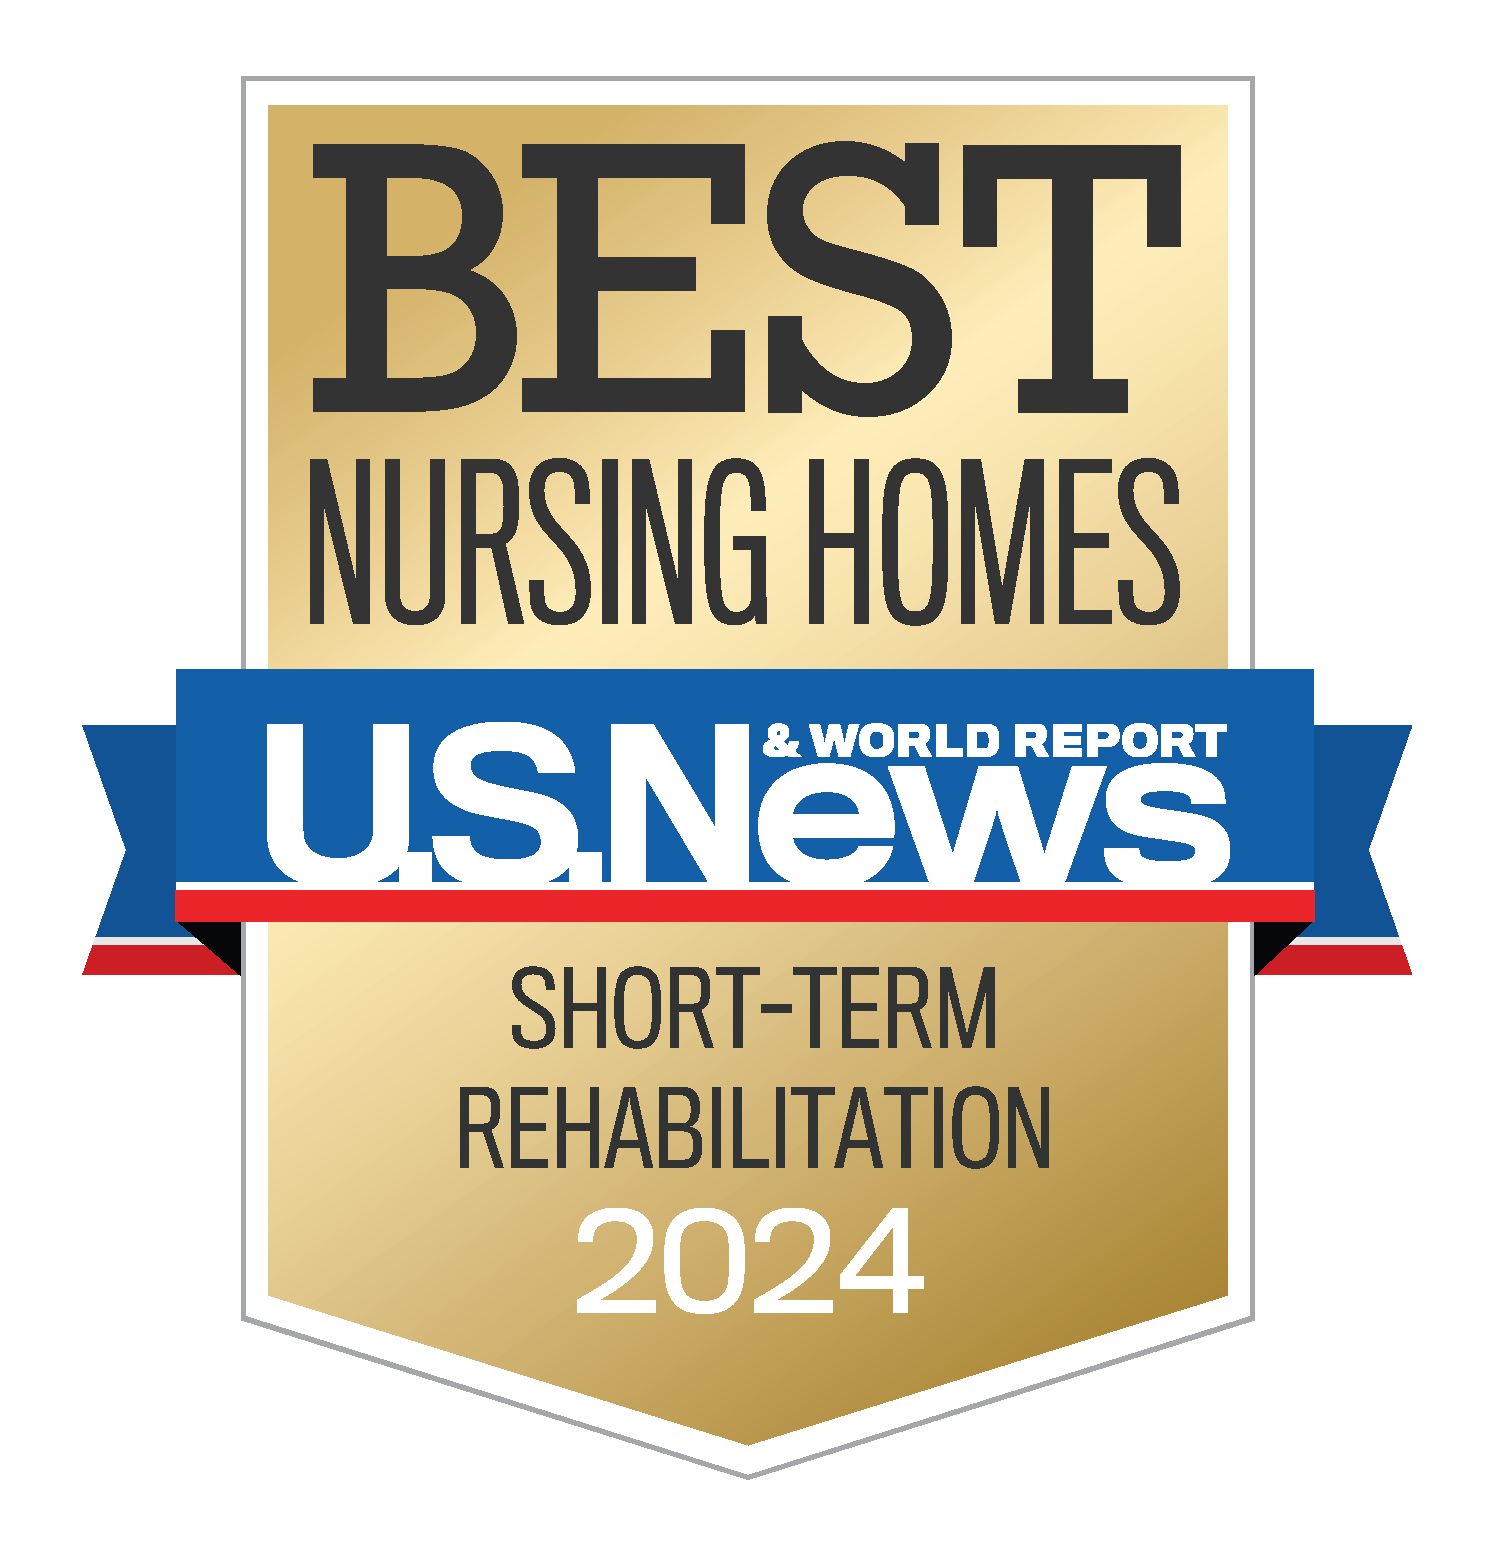 best nursing home. short-term rehabilitation 2024 in glendale california